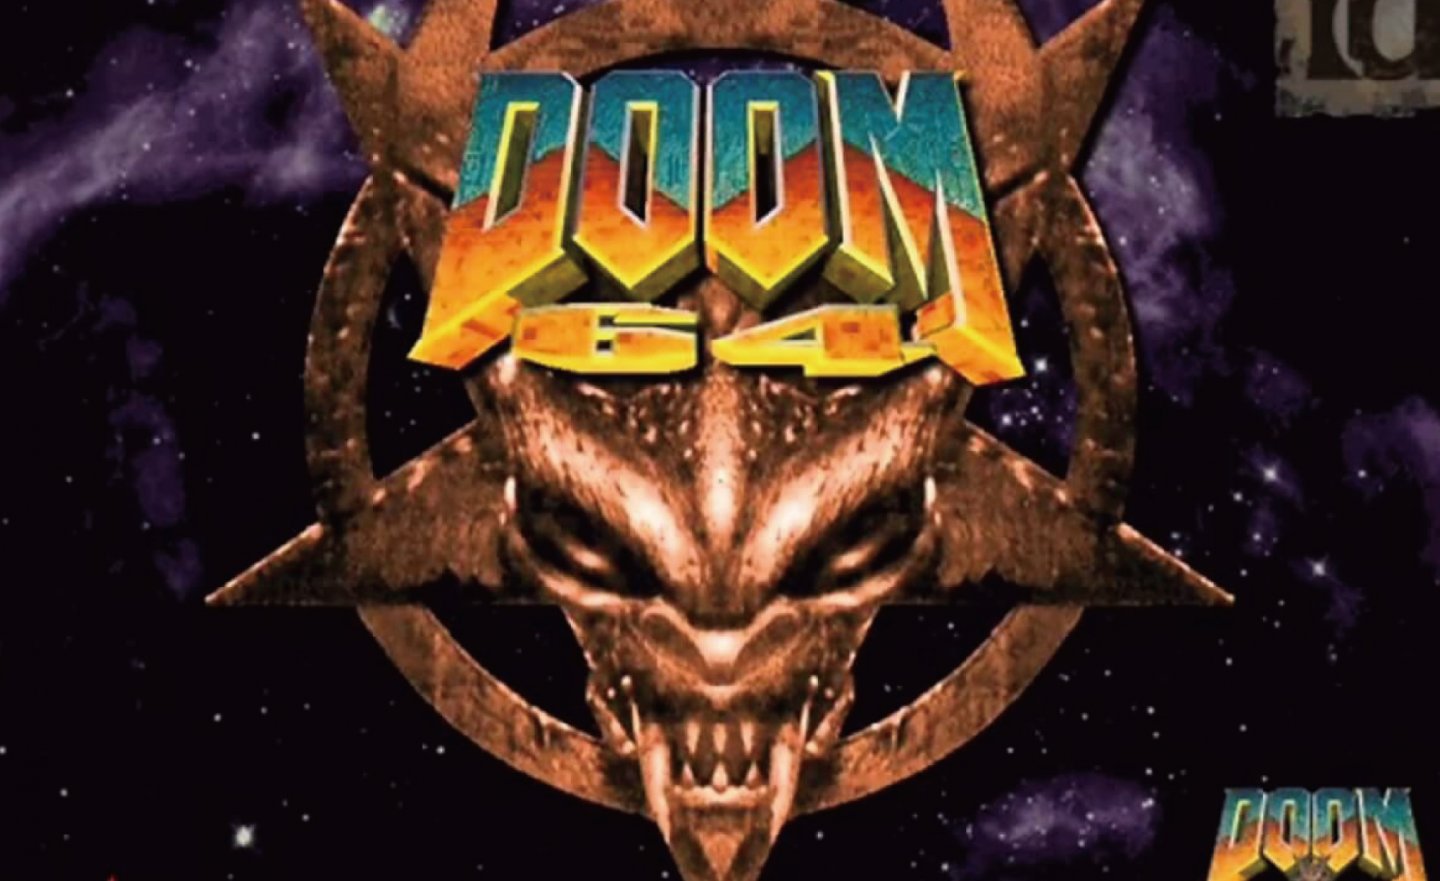 【限時免費】《DOOM 64》毀滅戰士初代加強版放送中，快搶在 2022 年 8 月 25 日 23:00 前領取